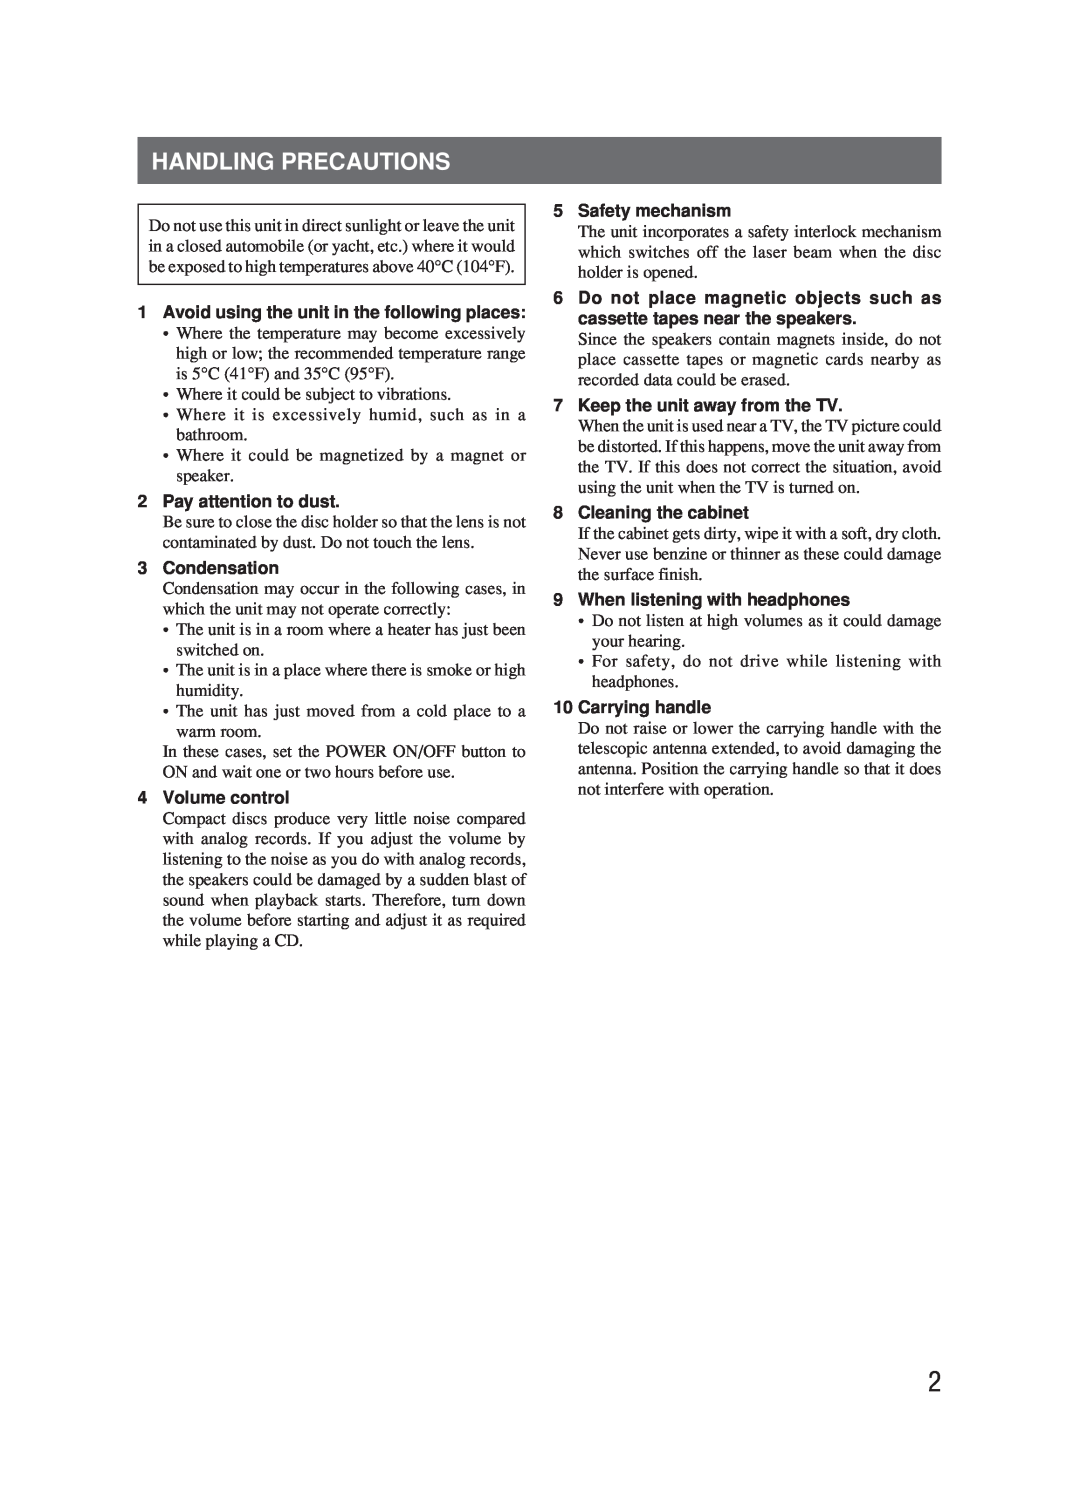 JVC RC-BM5 manual Handling Precautions 